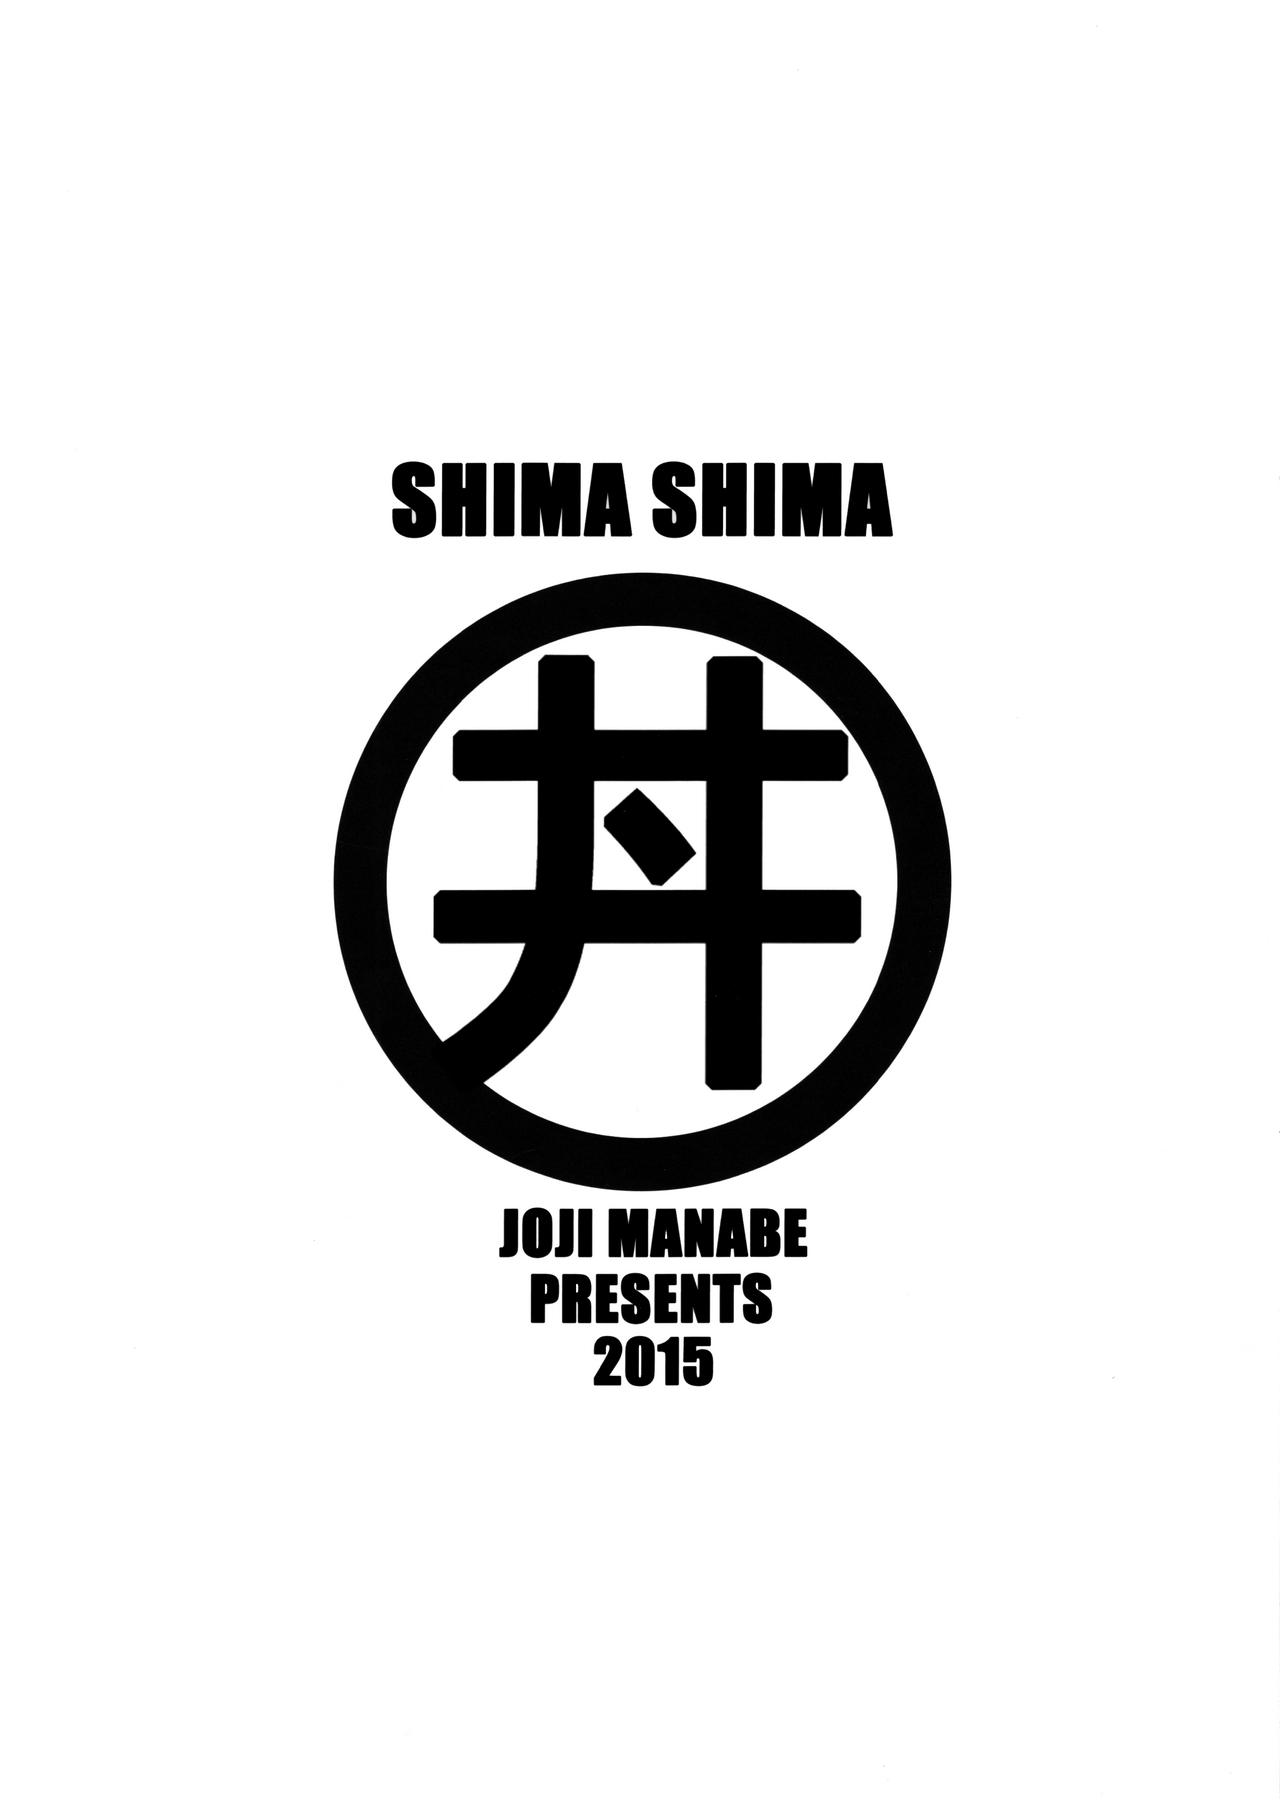 Shima Shima 25